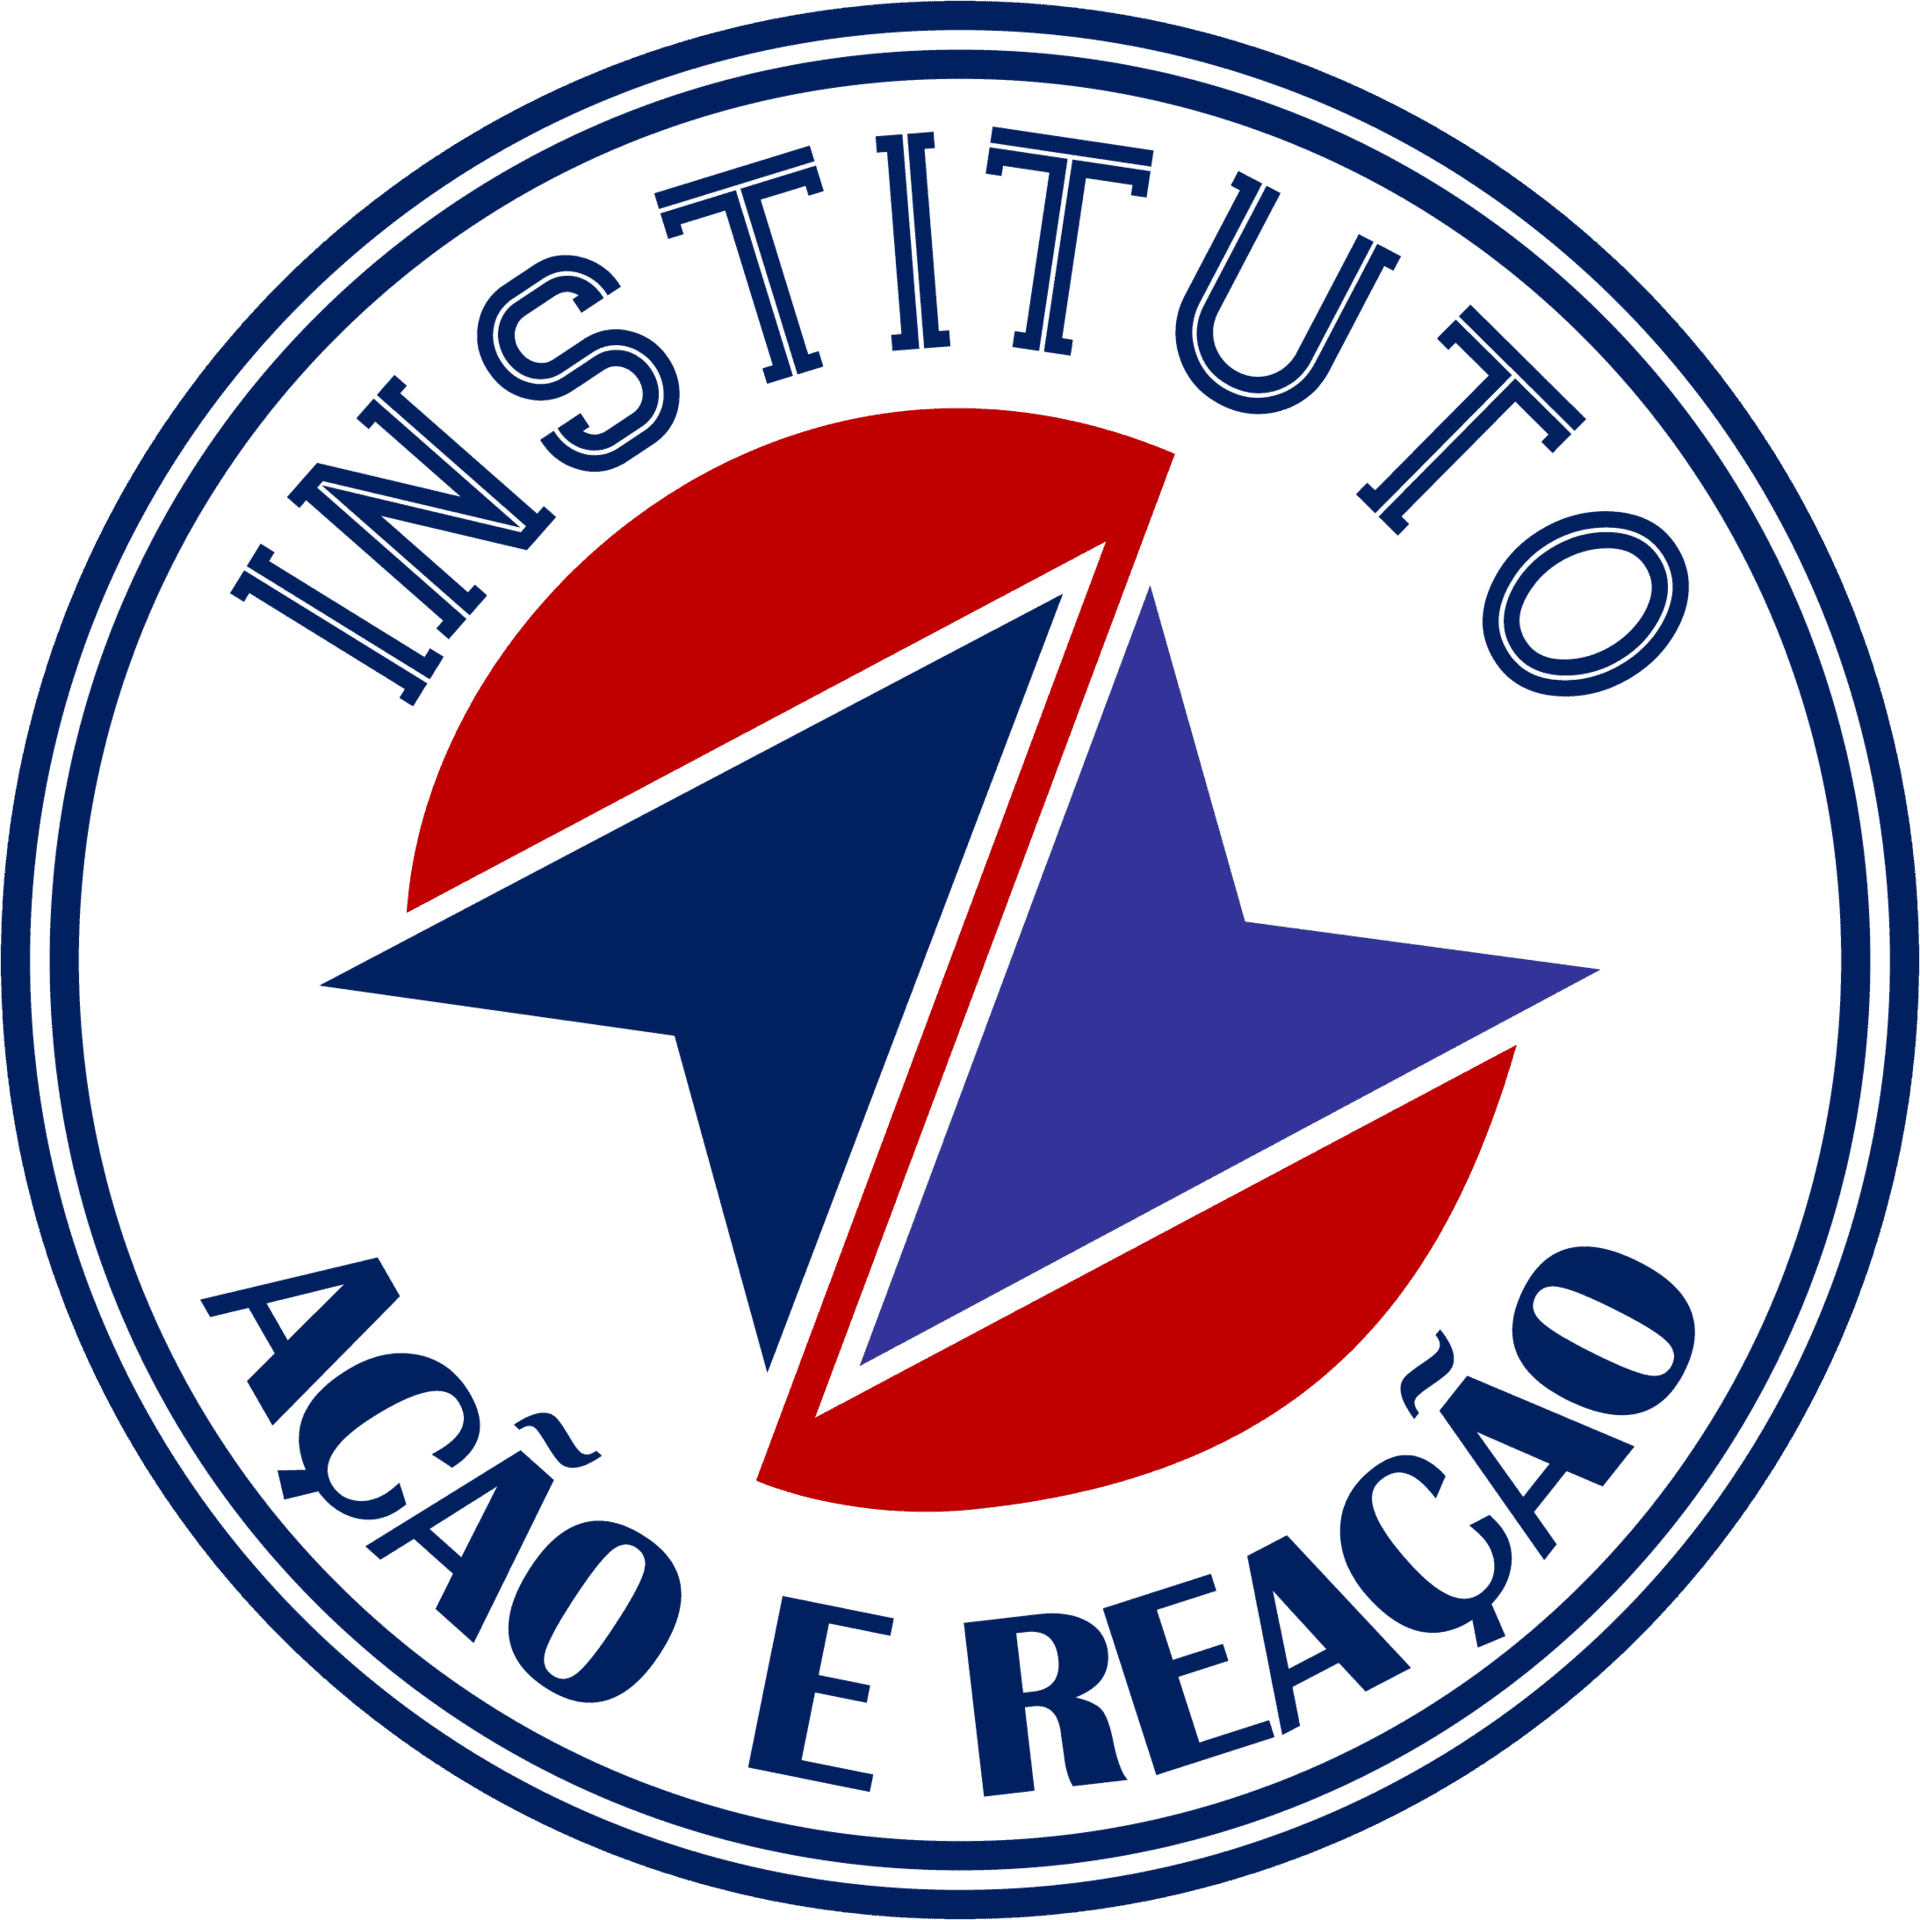 Instituto Ação e Reação Logo